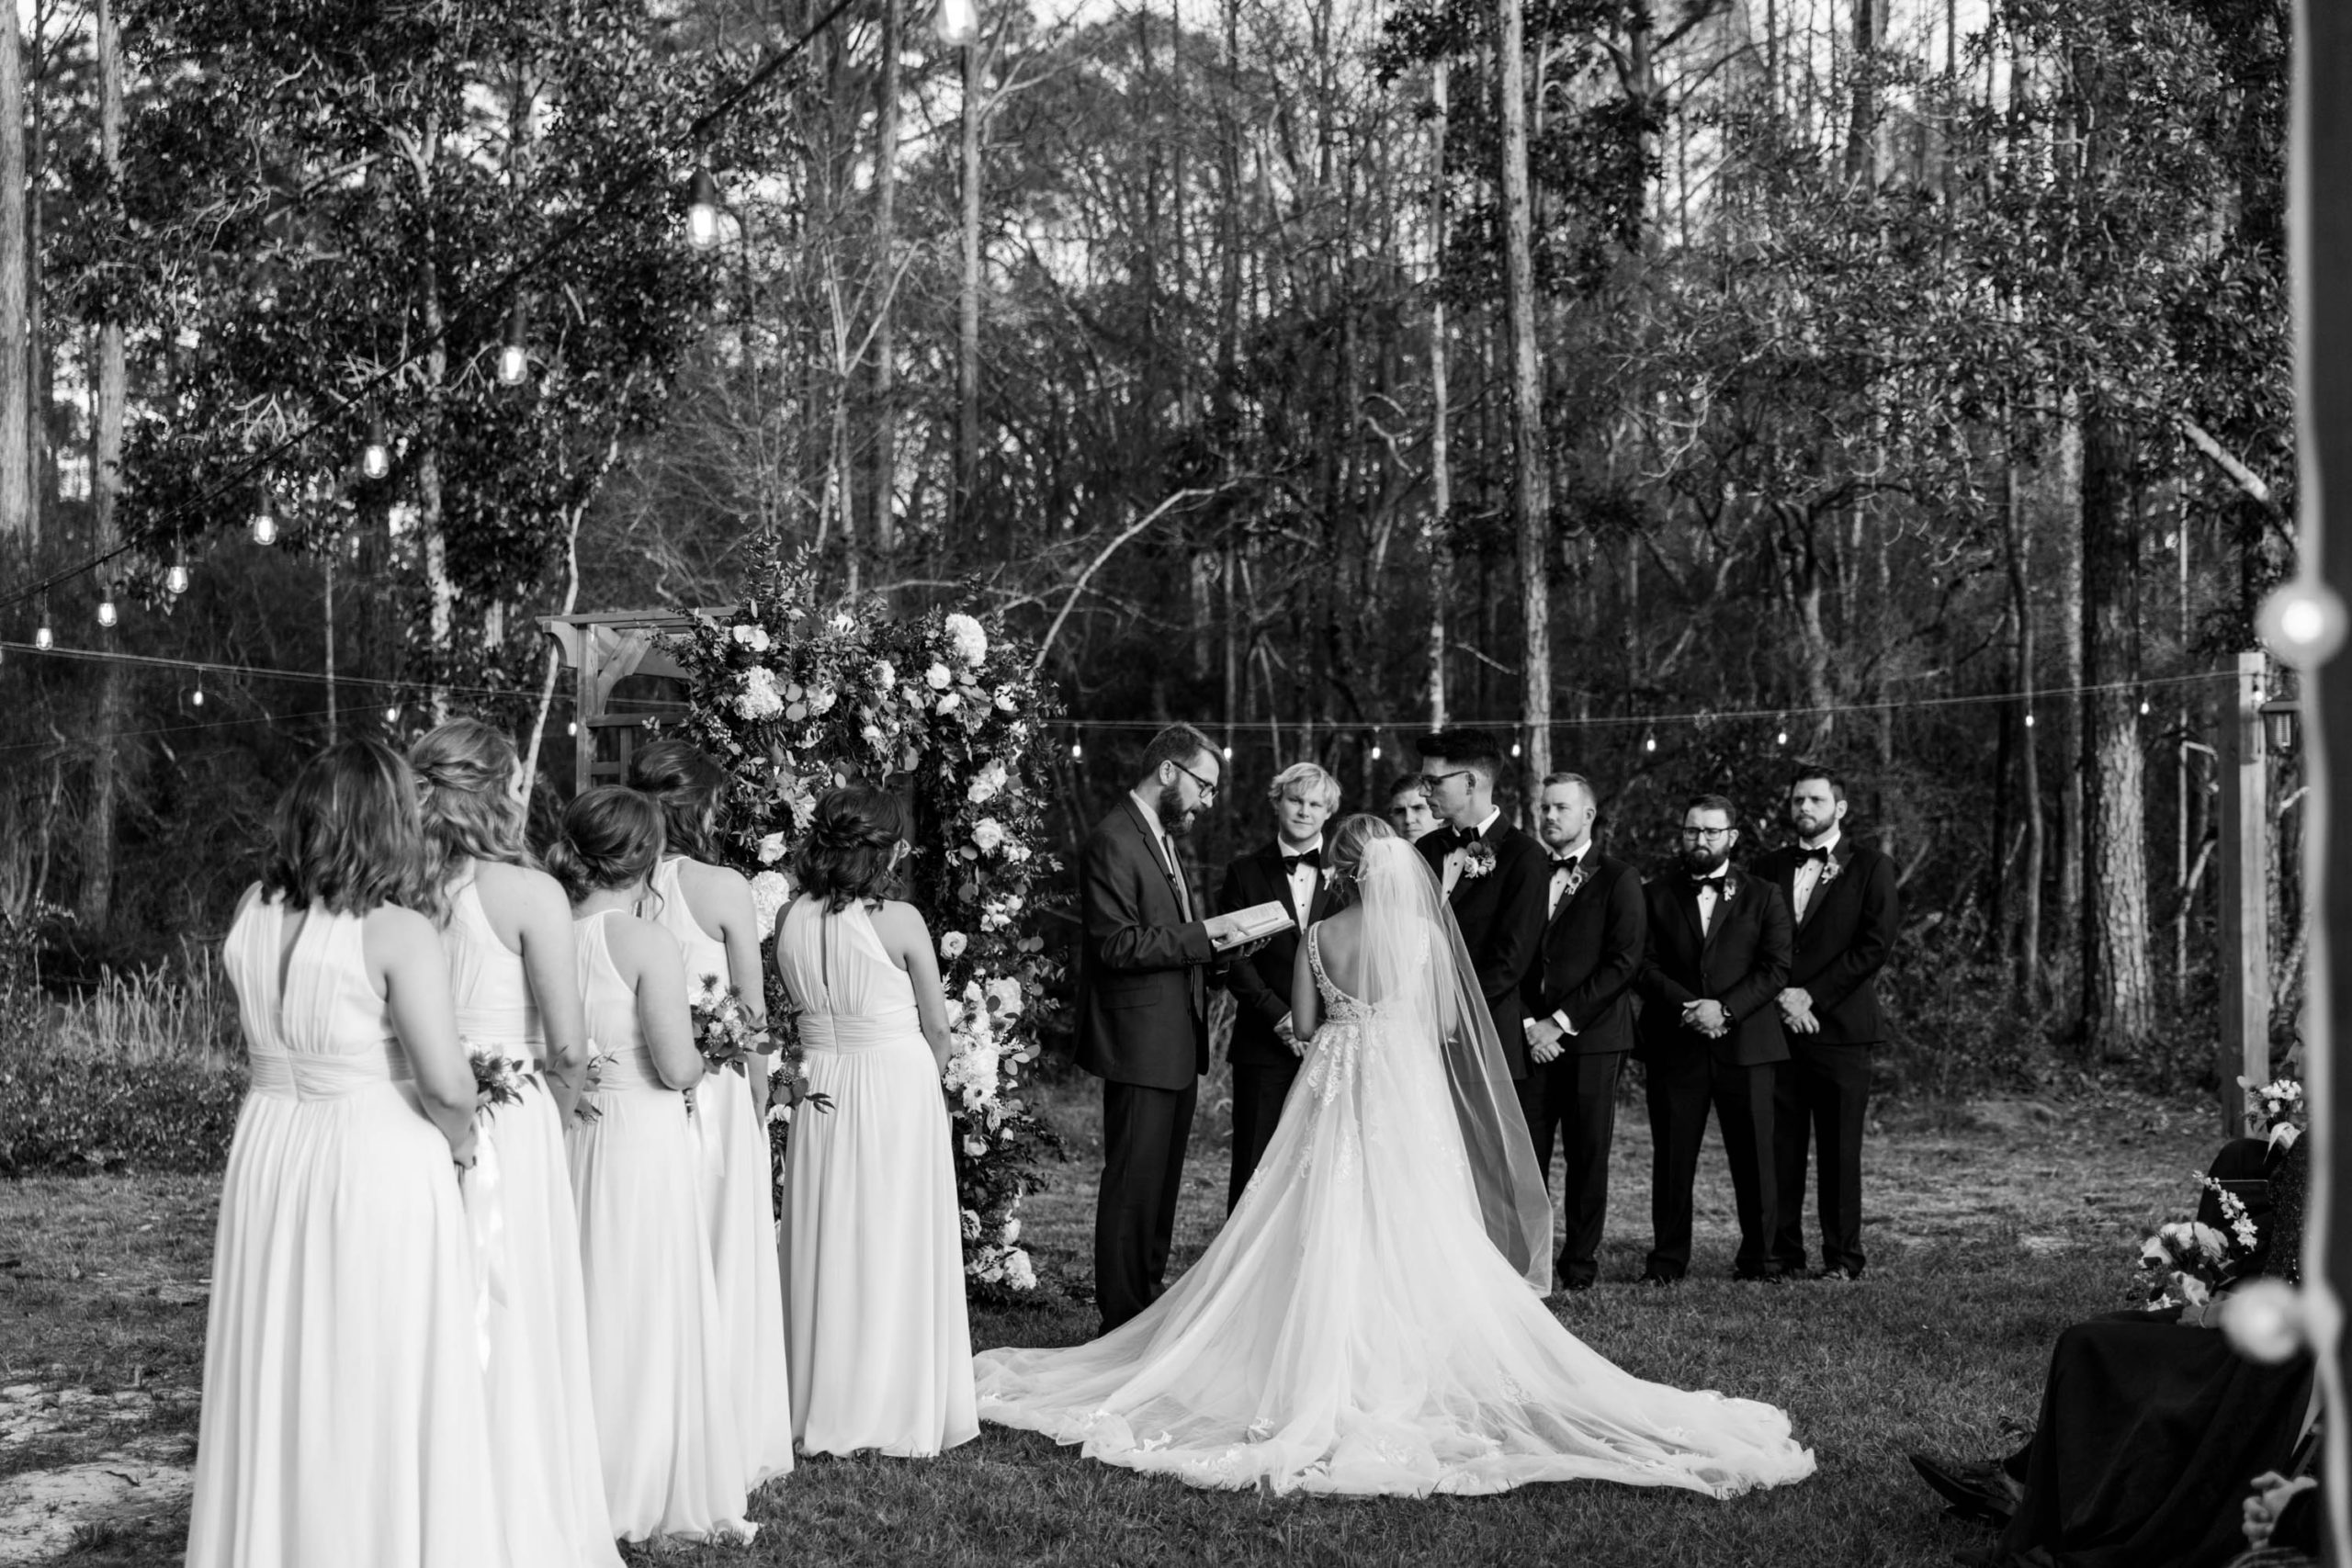 30A Wedding Photographer | Carolyn Allen Photography